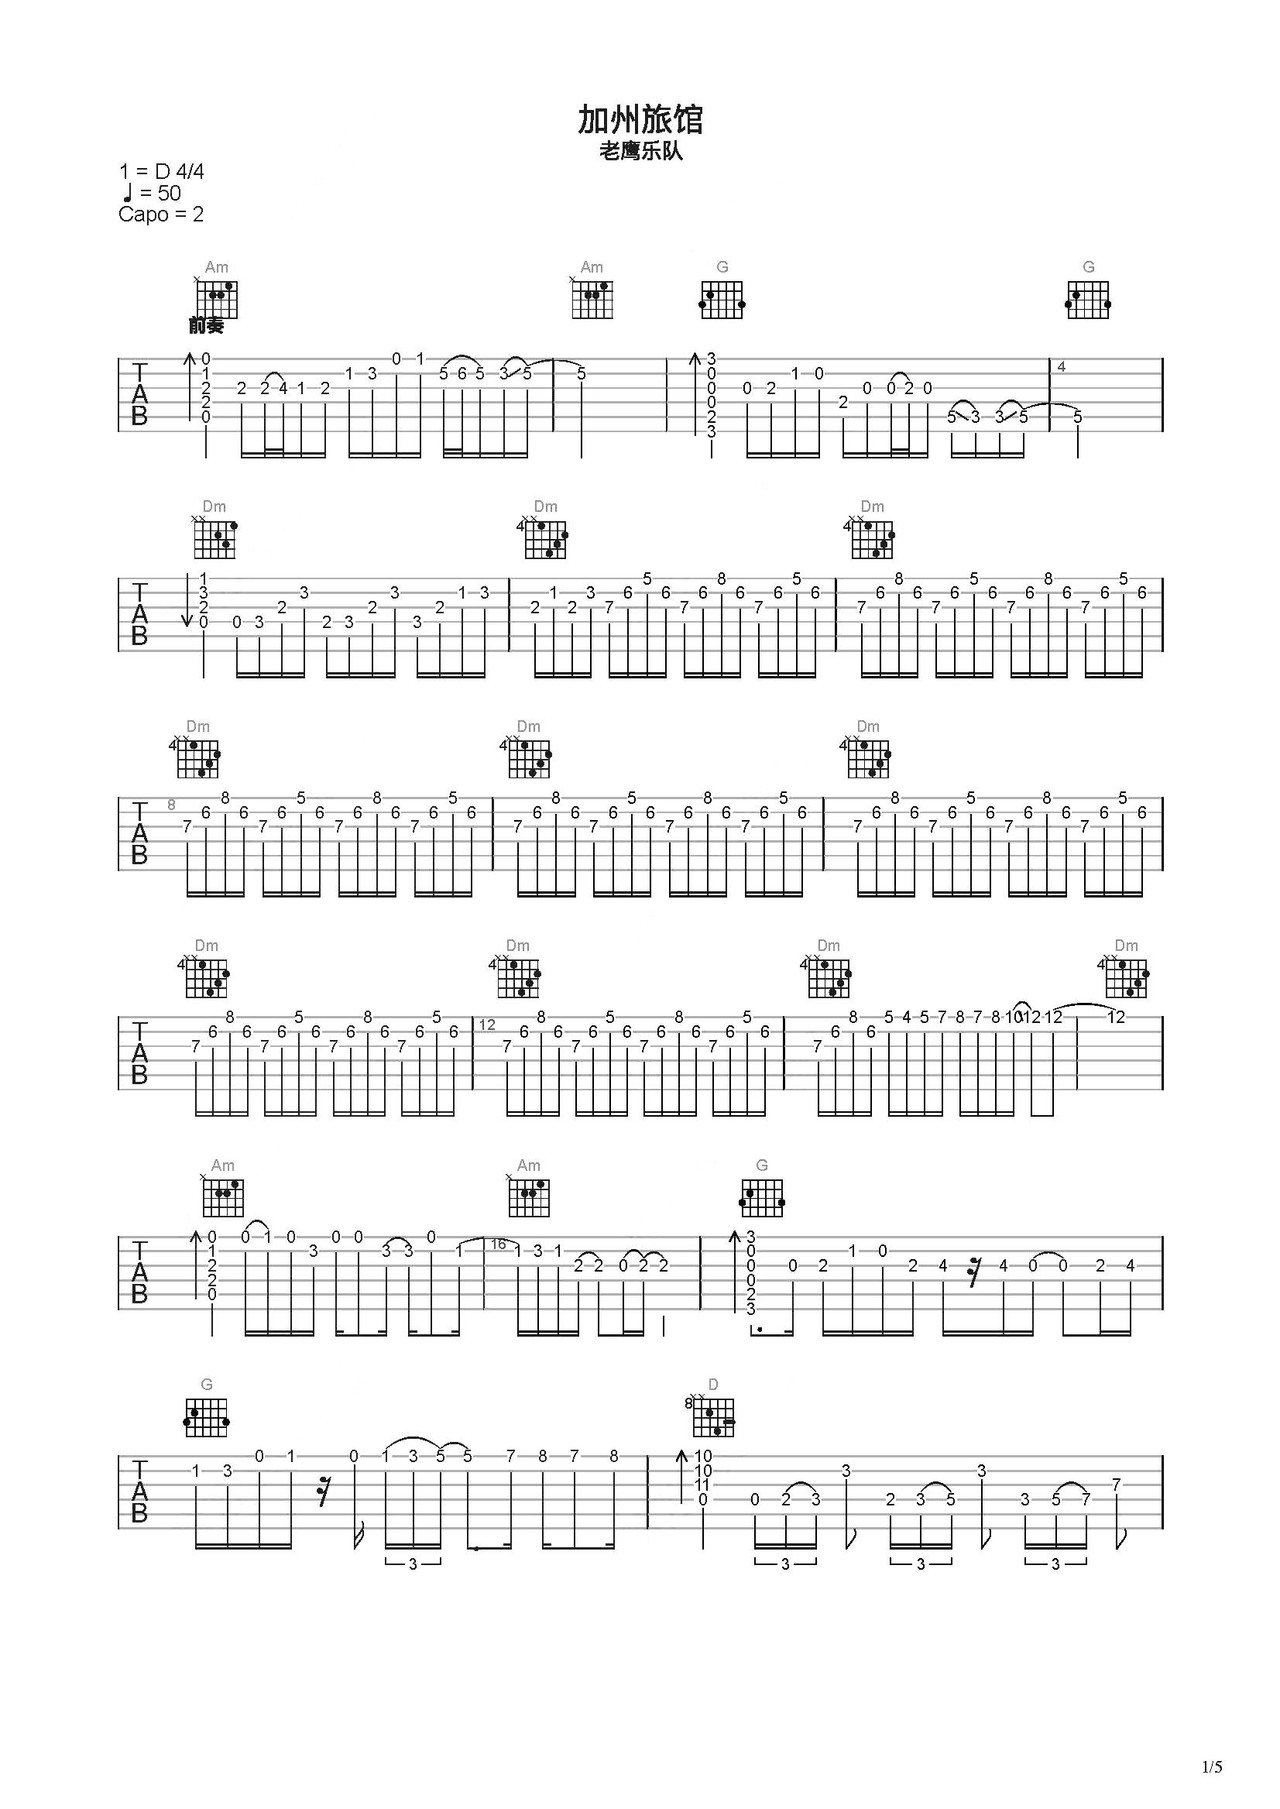 加州旅馆吉他谱 - 电吉他谱 - 张俊文版本 - 琴谱网